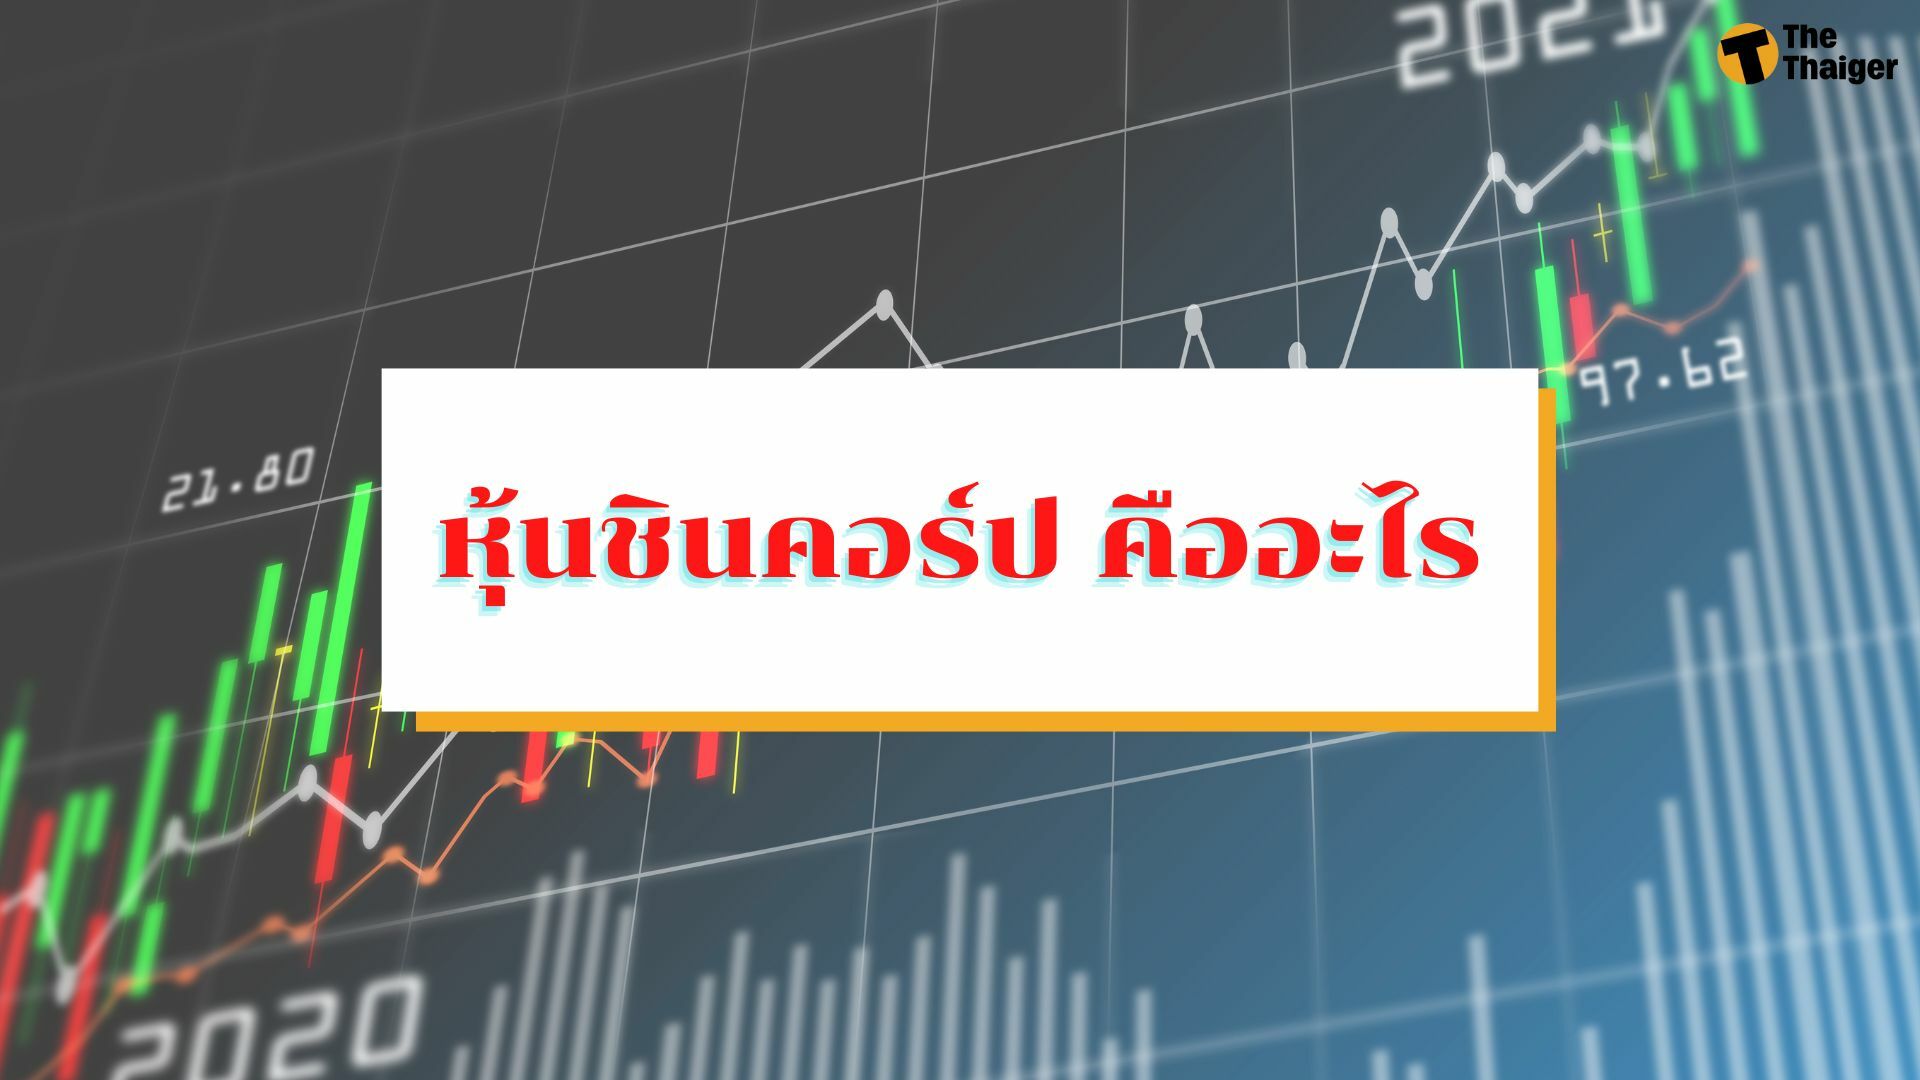 หุ้นชินคอร์ป คืออะไร หลังทักษิณชนะคดี รอดภาษีหมื่นล้าน | Thaiger ข่าวไทย